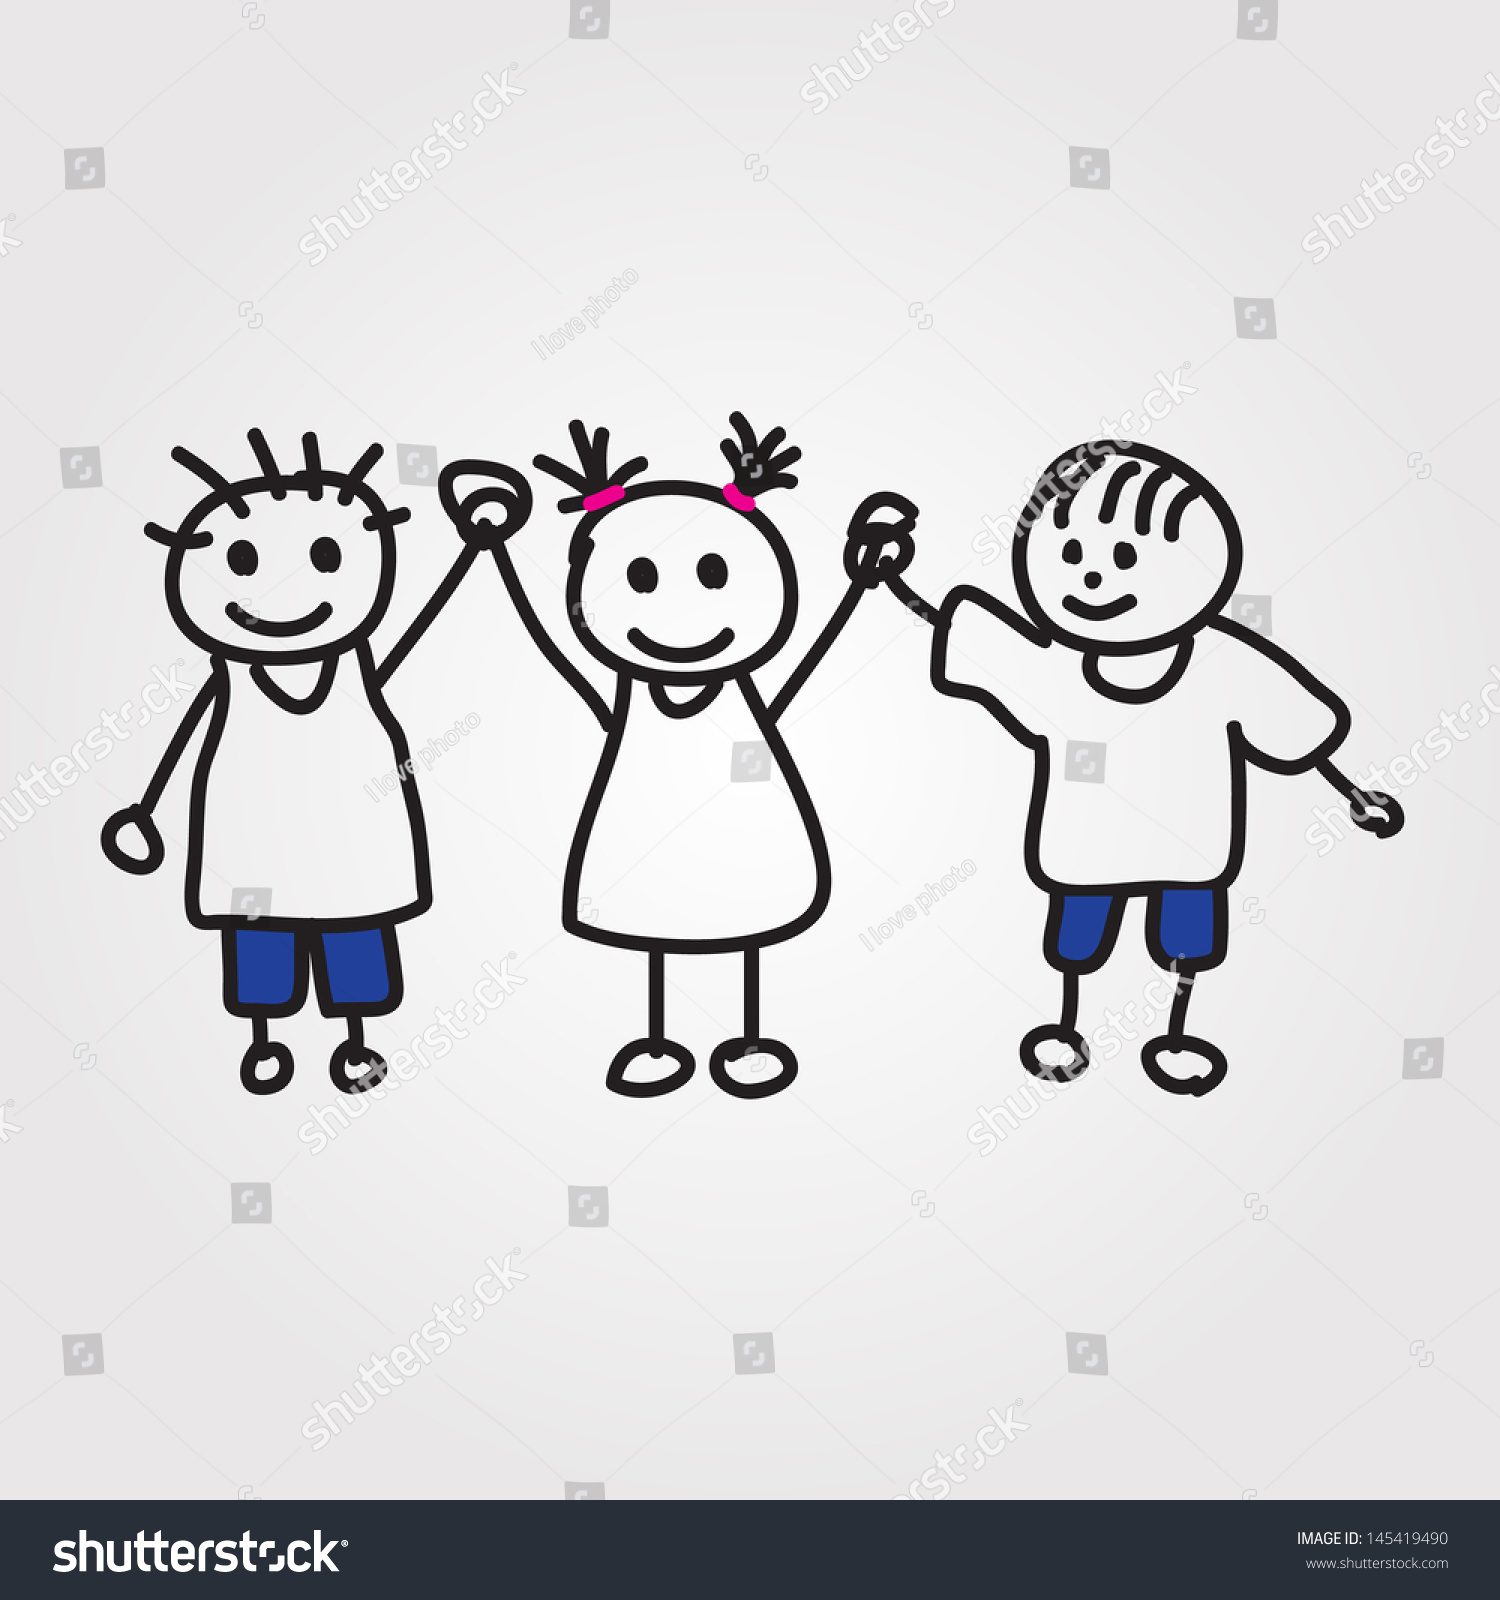 Children Vector Hand Drawn - 145419490 : Shutterstock